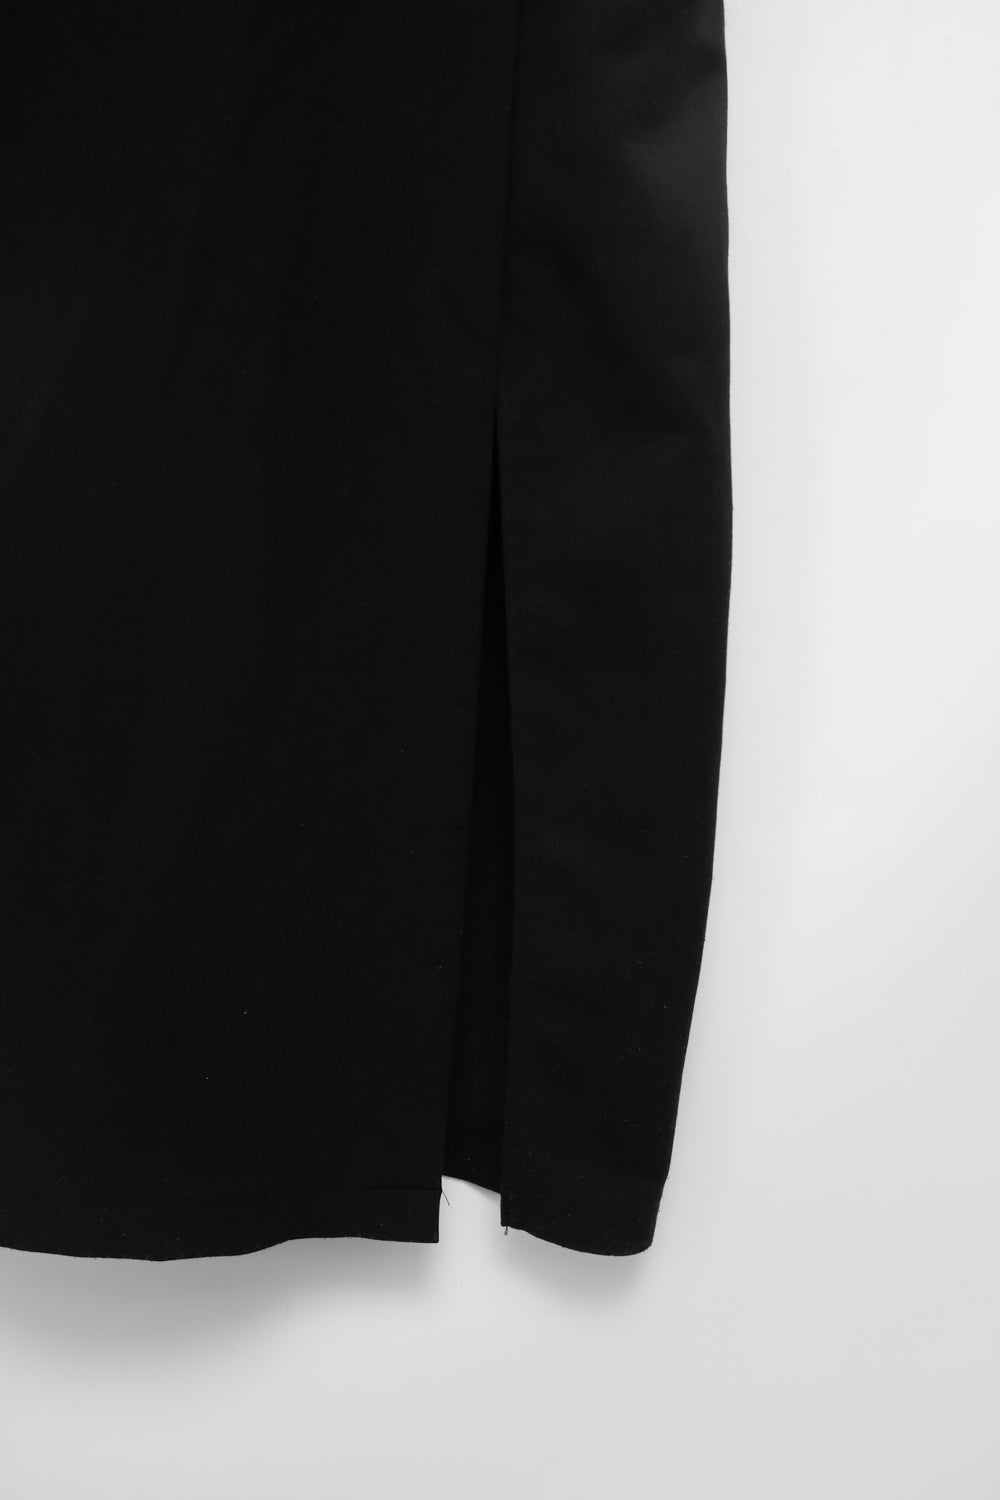 LONG BLACK STRAP BUCKLE VINTAGE DRESS